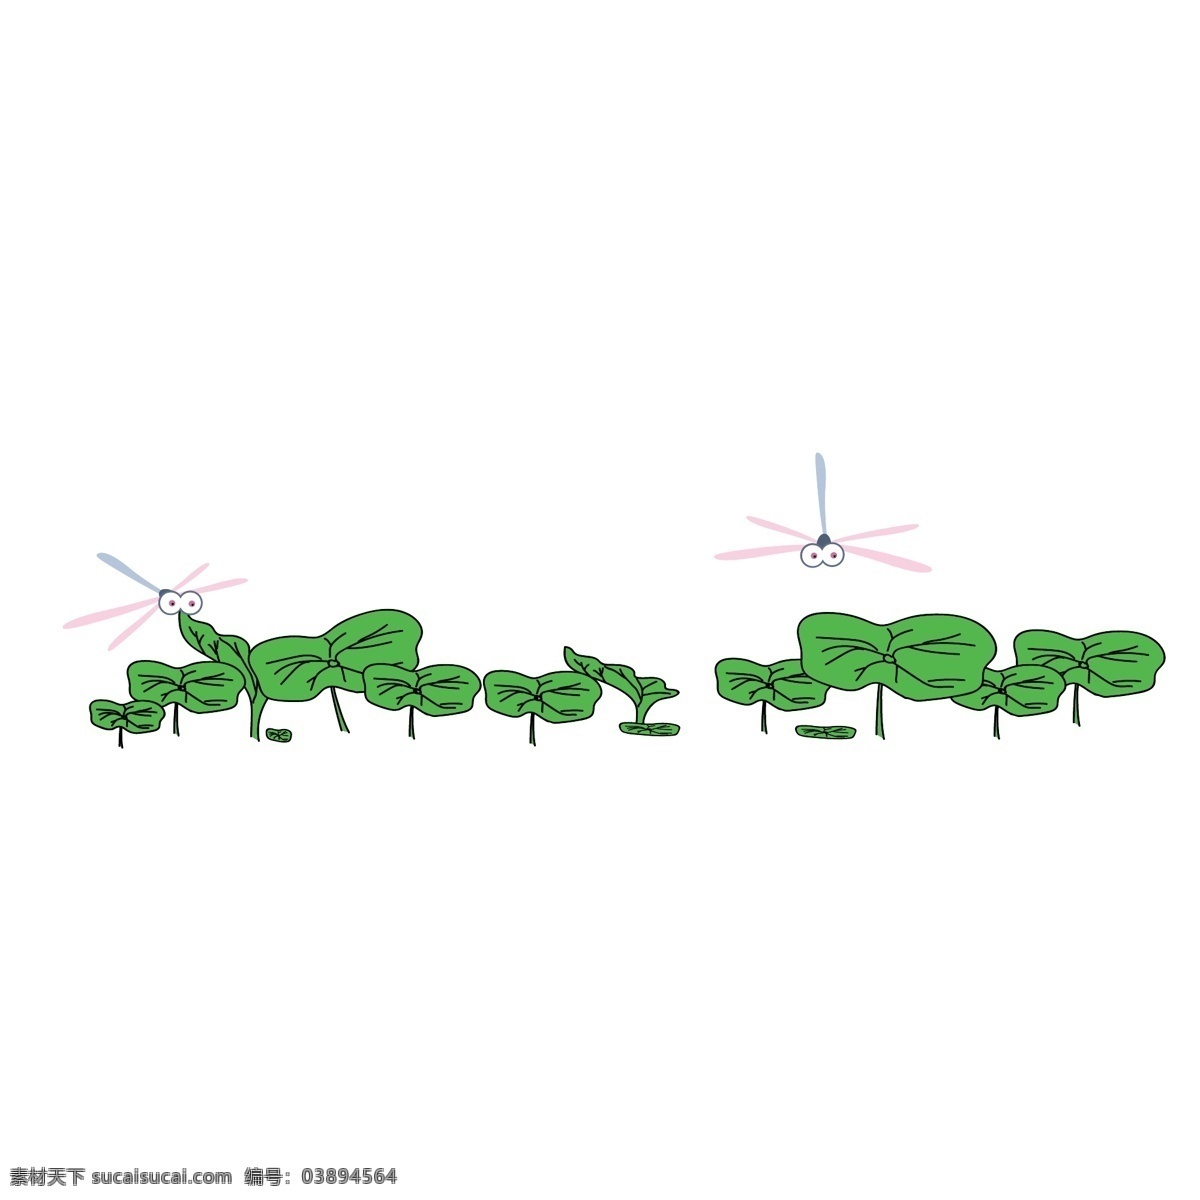 绿色 的卡 通 荷叶 分割线 卡通 插画 分割线插画 绿色的荷叶 蜻蜓分割线 植物分割线